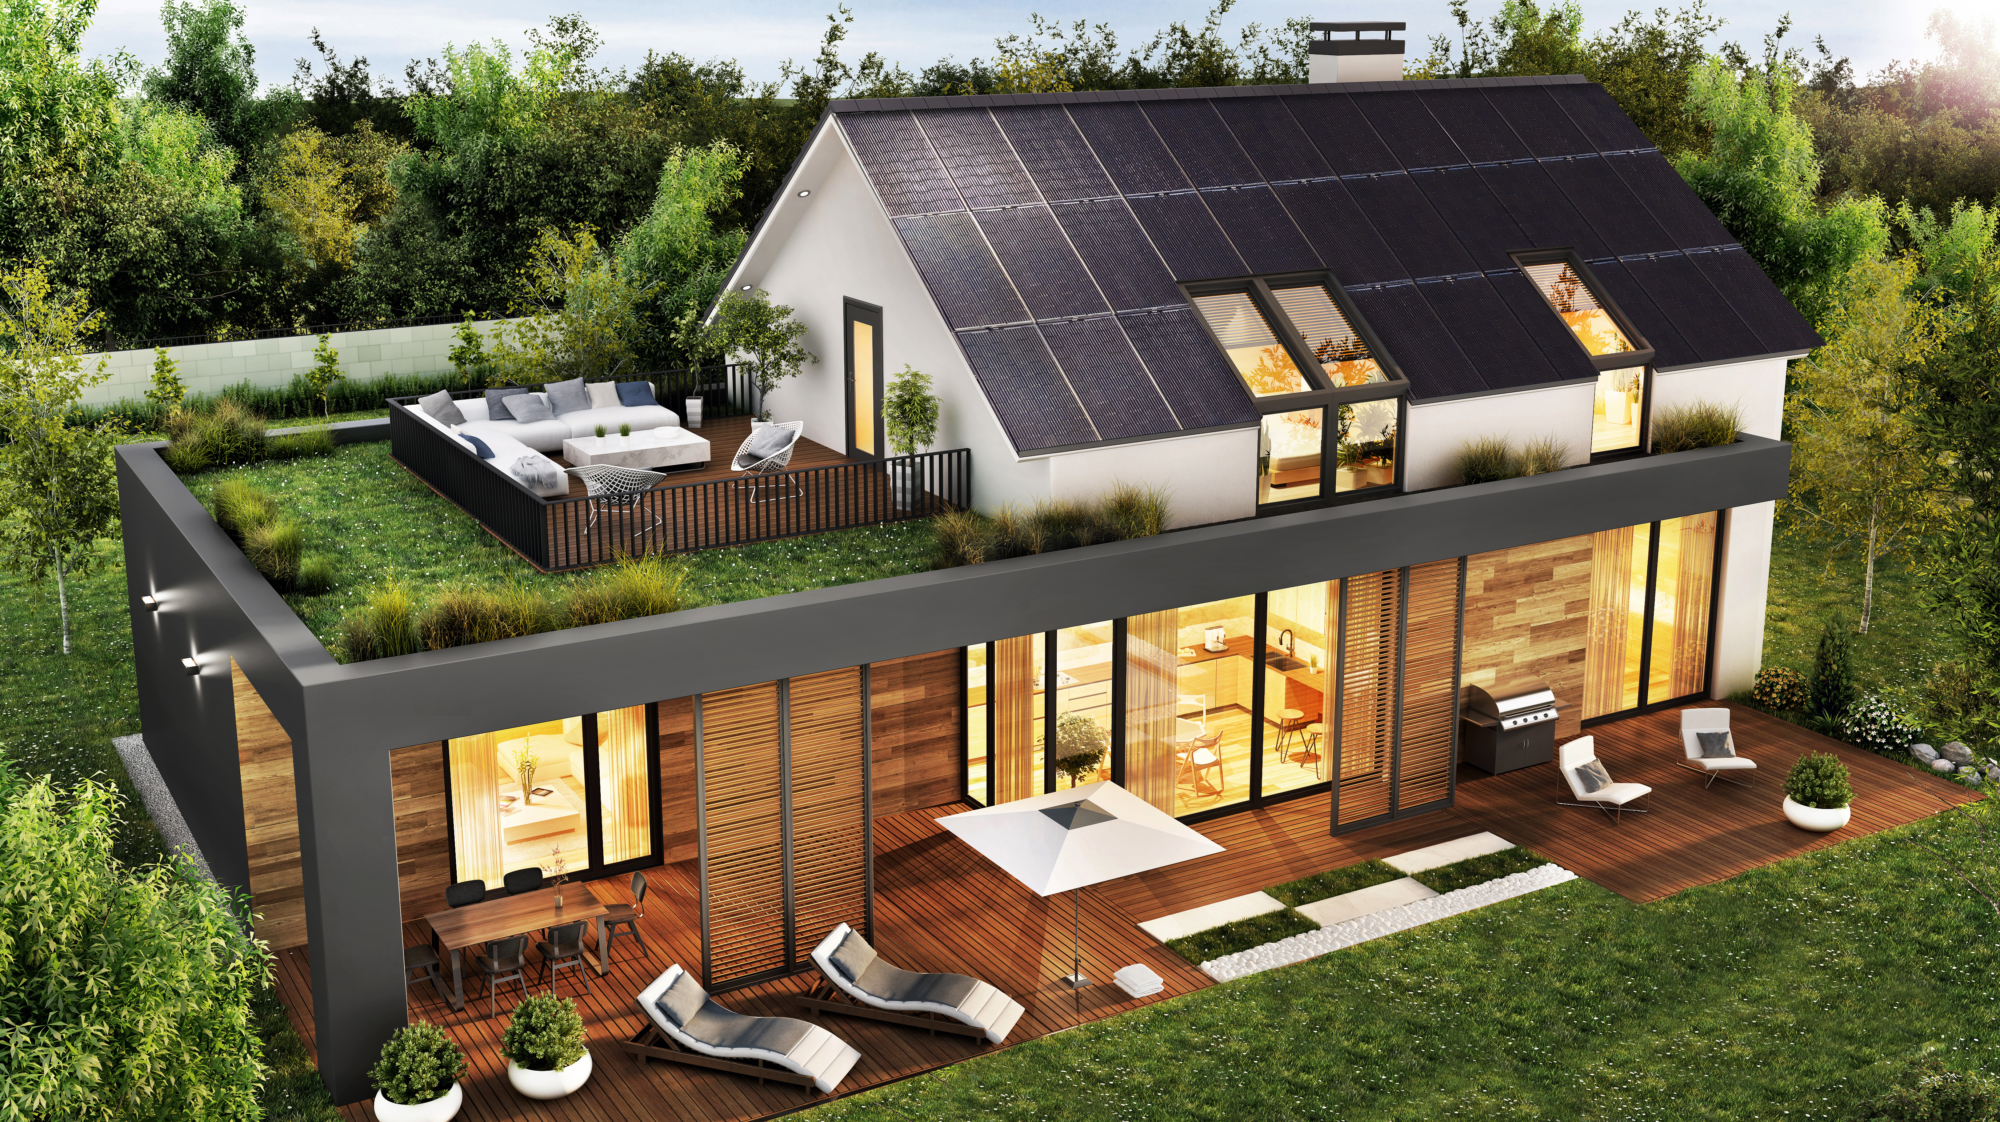 Zaprojektuj swoją wizję Domu Przyszłości z SunRoof i BIMobject!